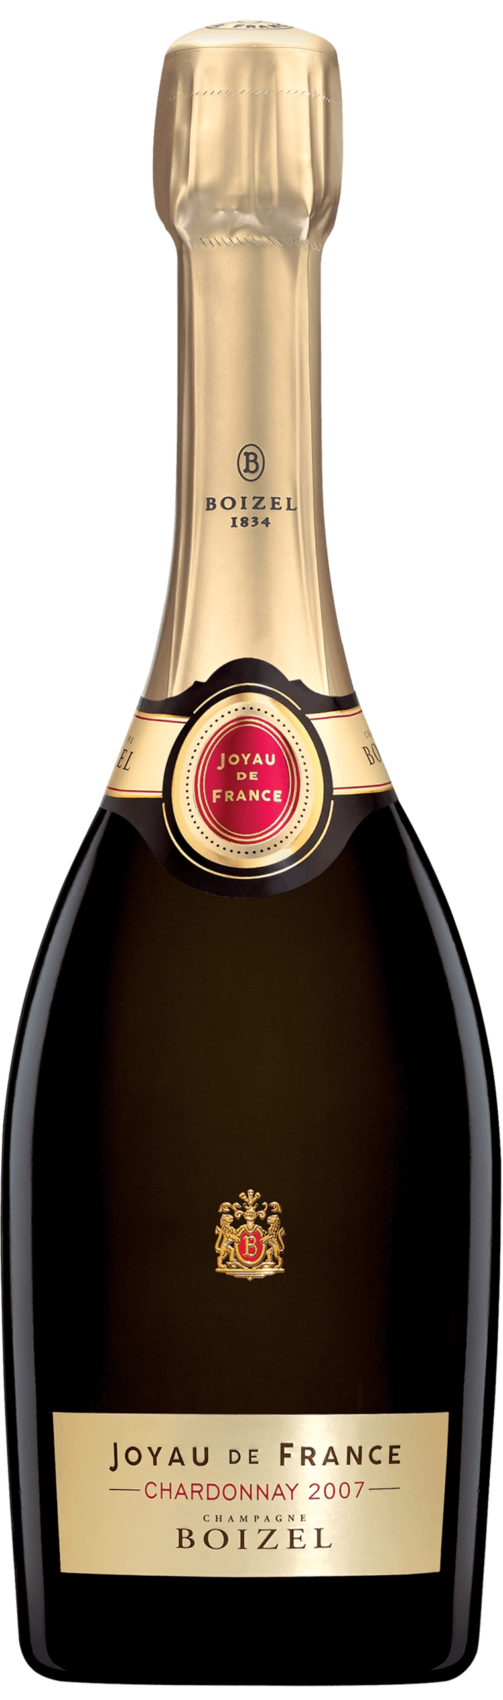 Champagne Boizel Joyau de France Chardonnay 2007